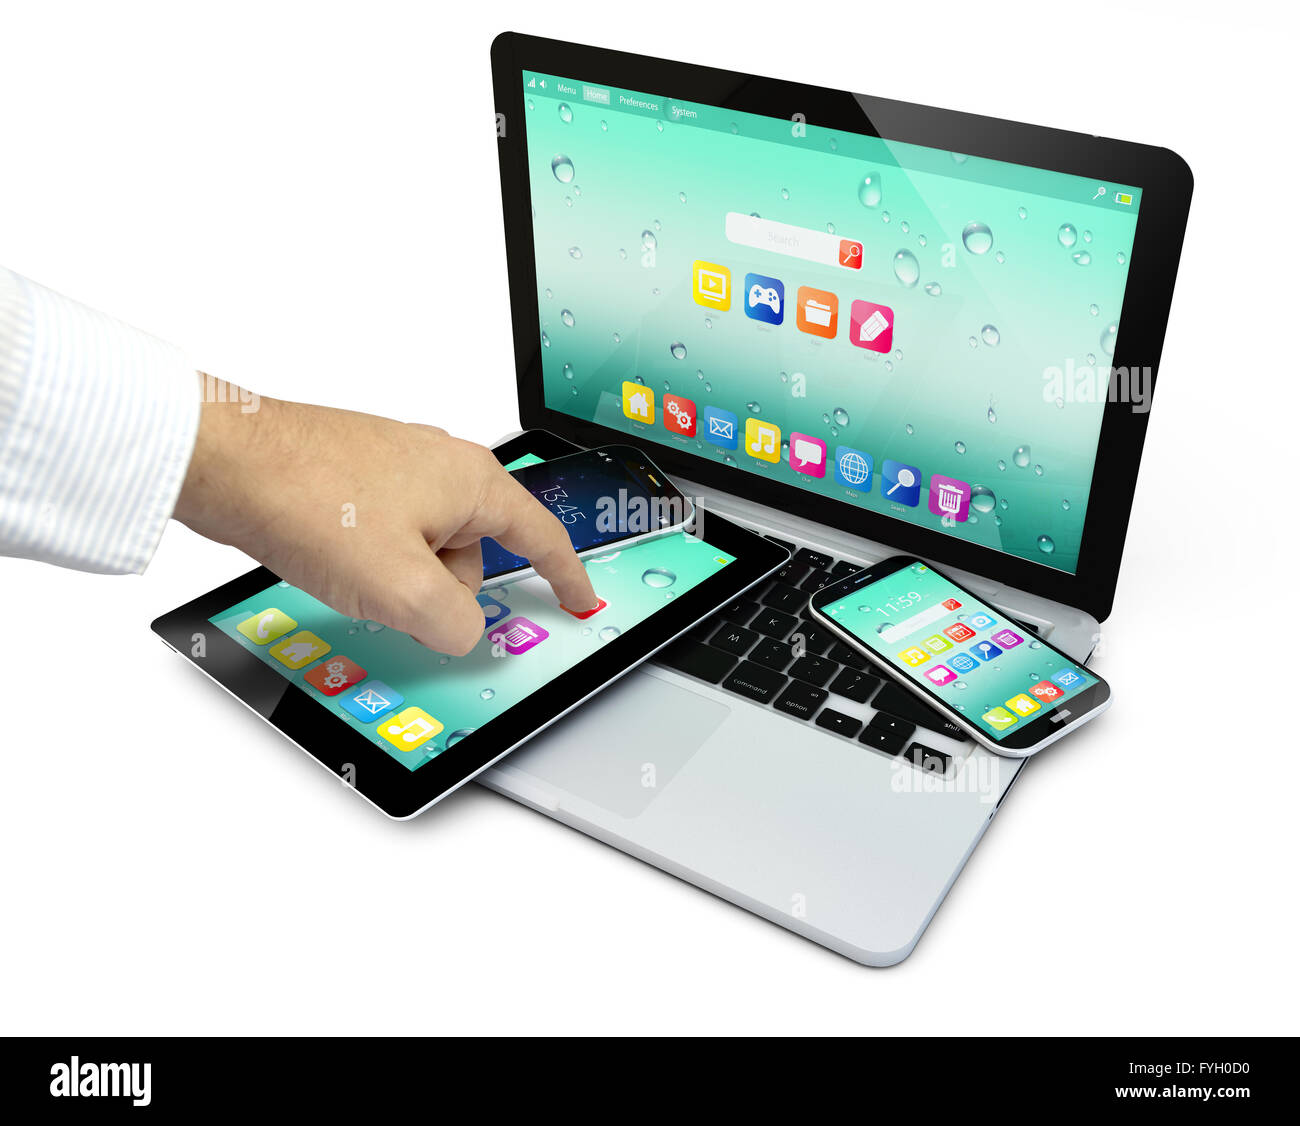 Touchscreen-Tablet, Computer-Laptop-pc und Smartphones mit bunten Oberfläche mit farbige Icons und Buttons und einer Hand berühren Stockfoto